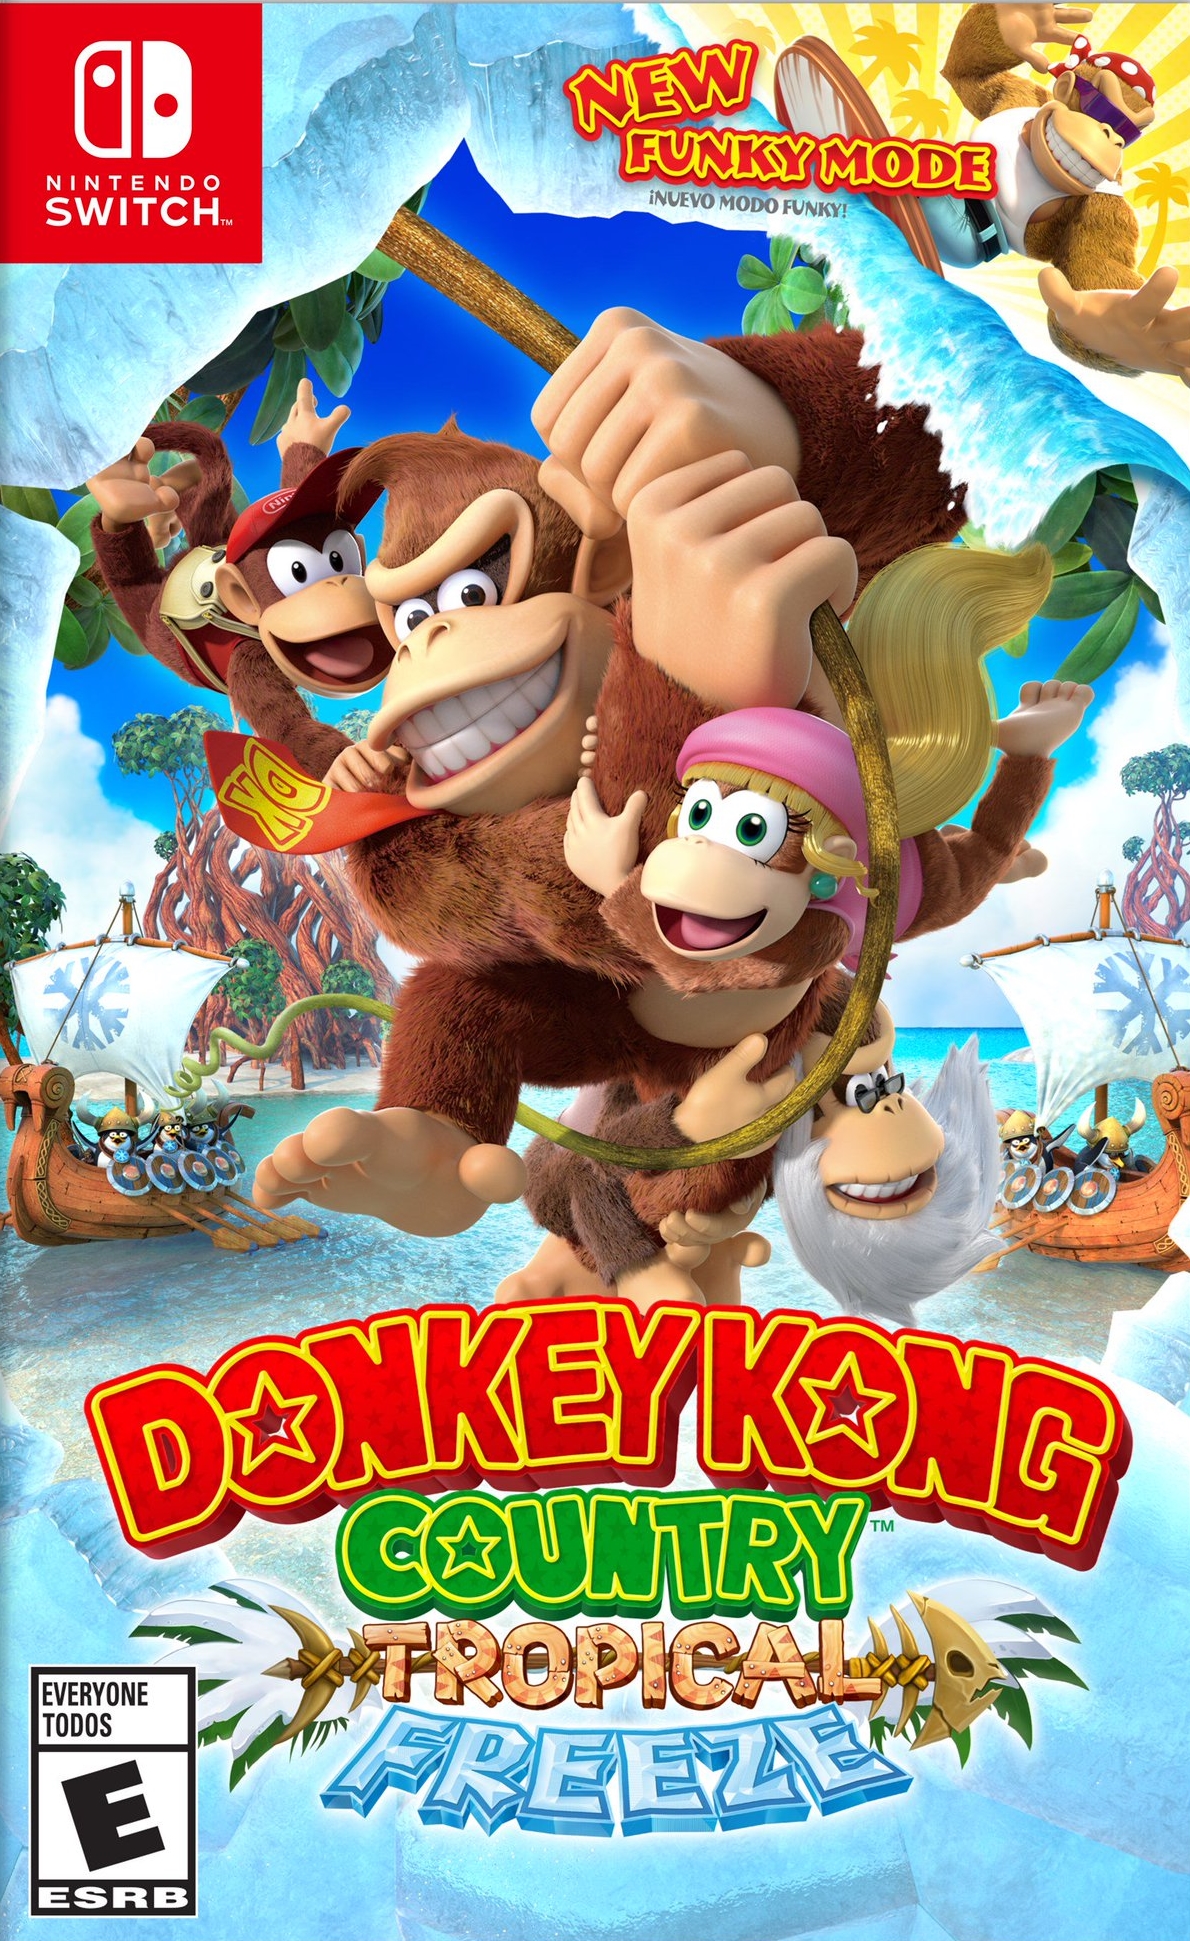 jaquette reduite de Donkey Kong: Tropical Freeze sur Switch